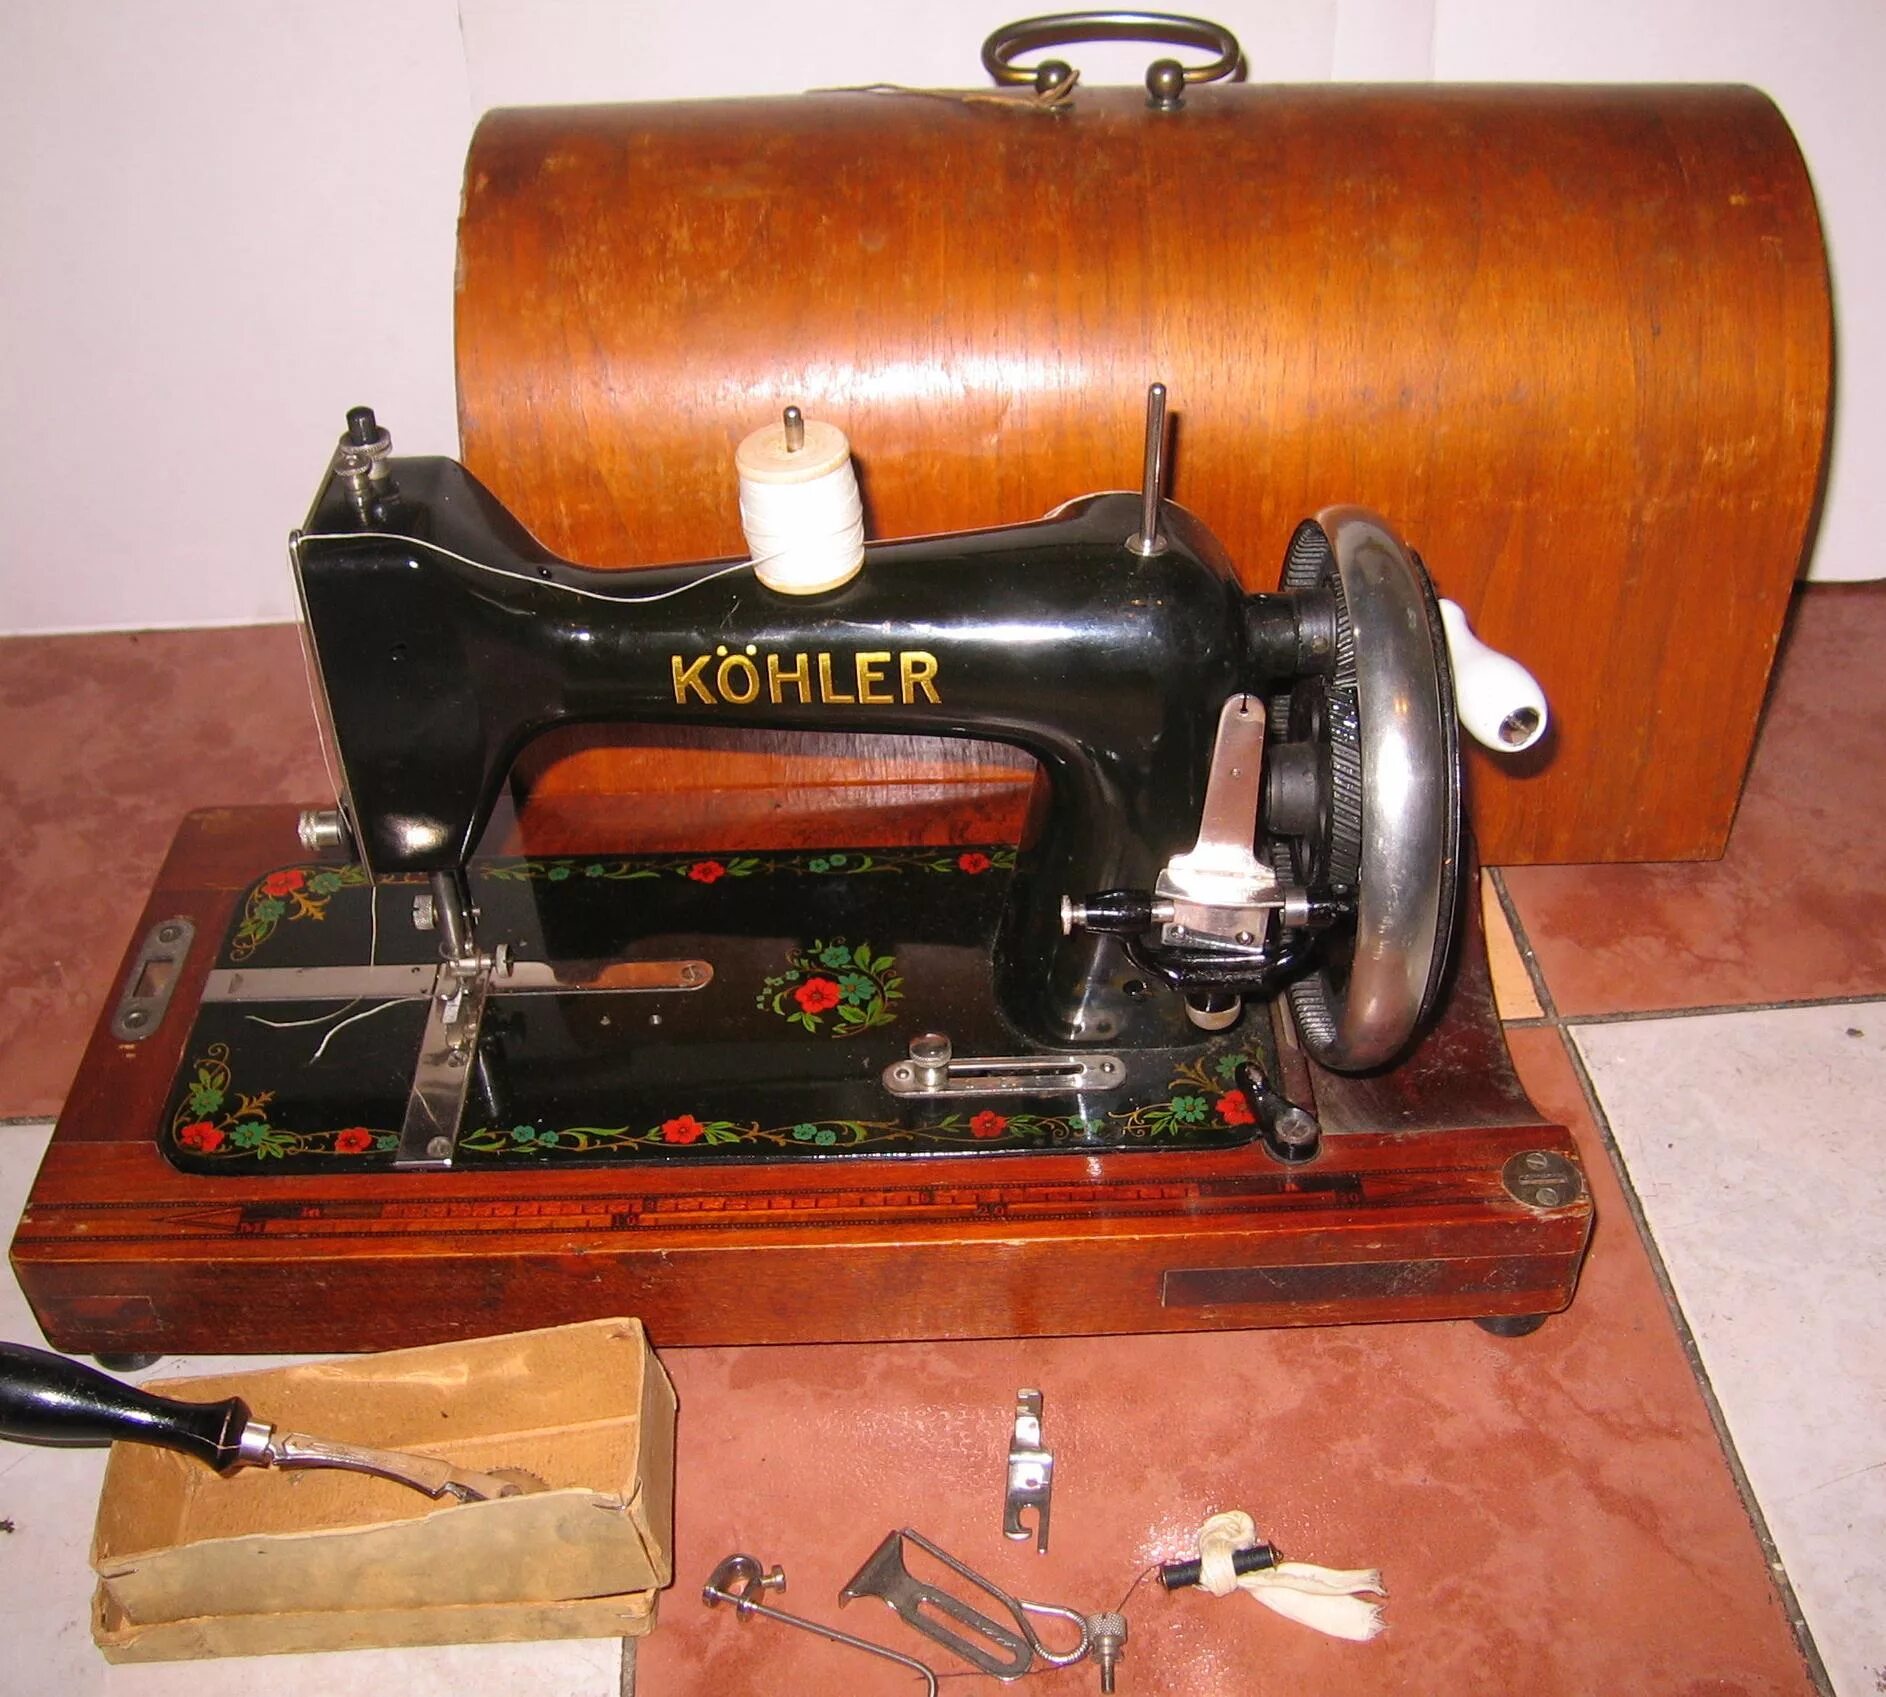 Швейная машинка 60. Kohler швейная машинка. Kohler 52 2 швейная машинка. Швейная машинка Кохлер 1903г. Швейная машинка kohler Natalis.